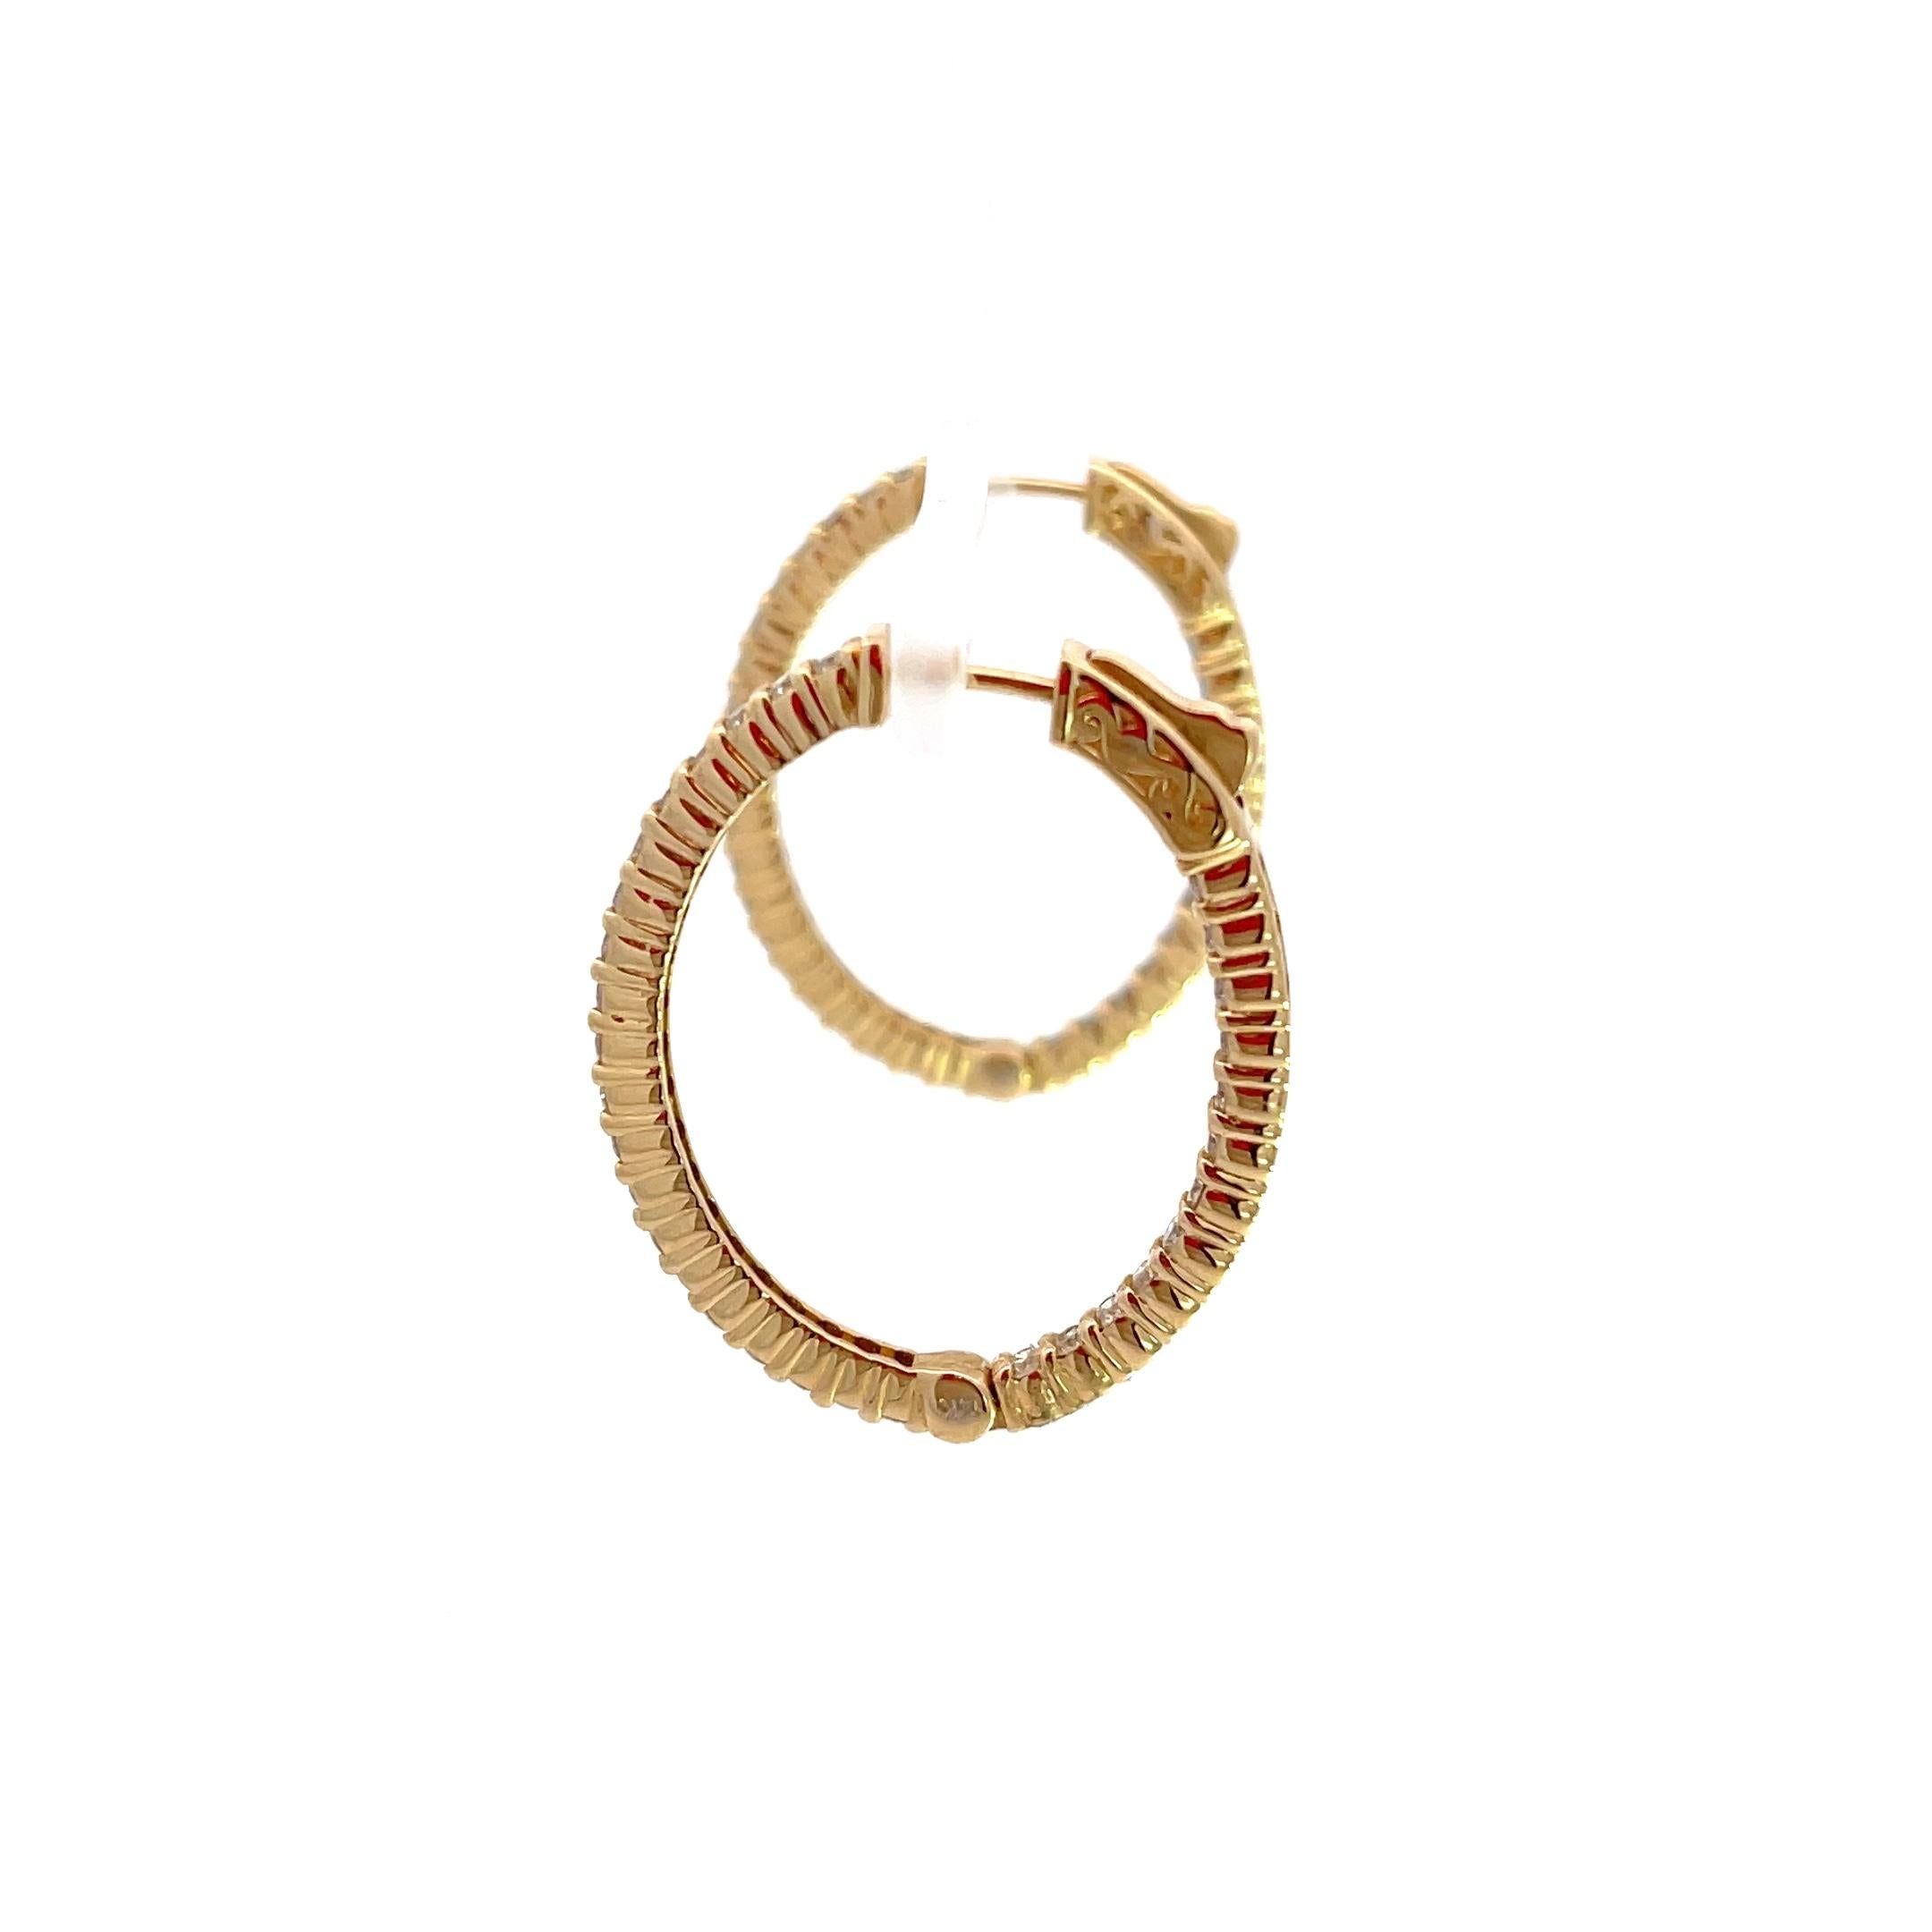 Wir stellen unsere exquisiten ovalen Ohrringe aus 14K Gelbgold mit 1 3/4 Karat Diamanten vor, ein zeitloses Wunderwerk, das Eleganz und Raffinesse ausstrahlt. Diese mit viel Liebe zum Detail gefertigten Reifchen aus glänzendem 14-karätigem Gelbgold